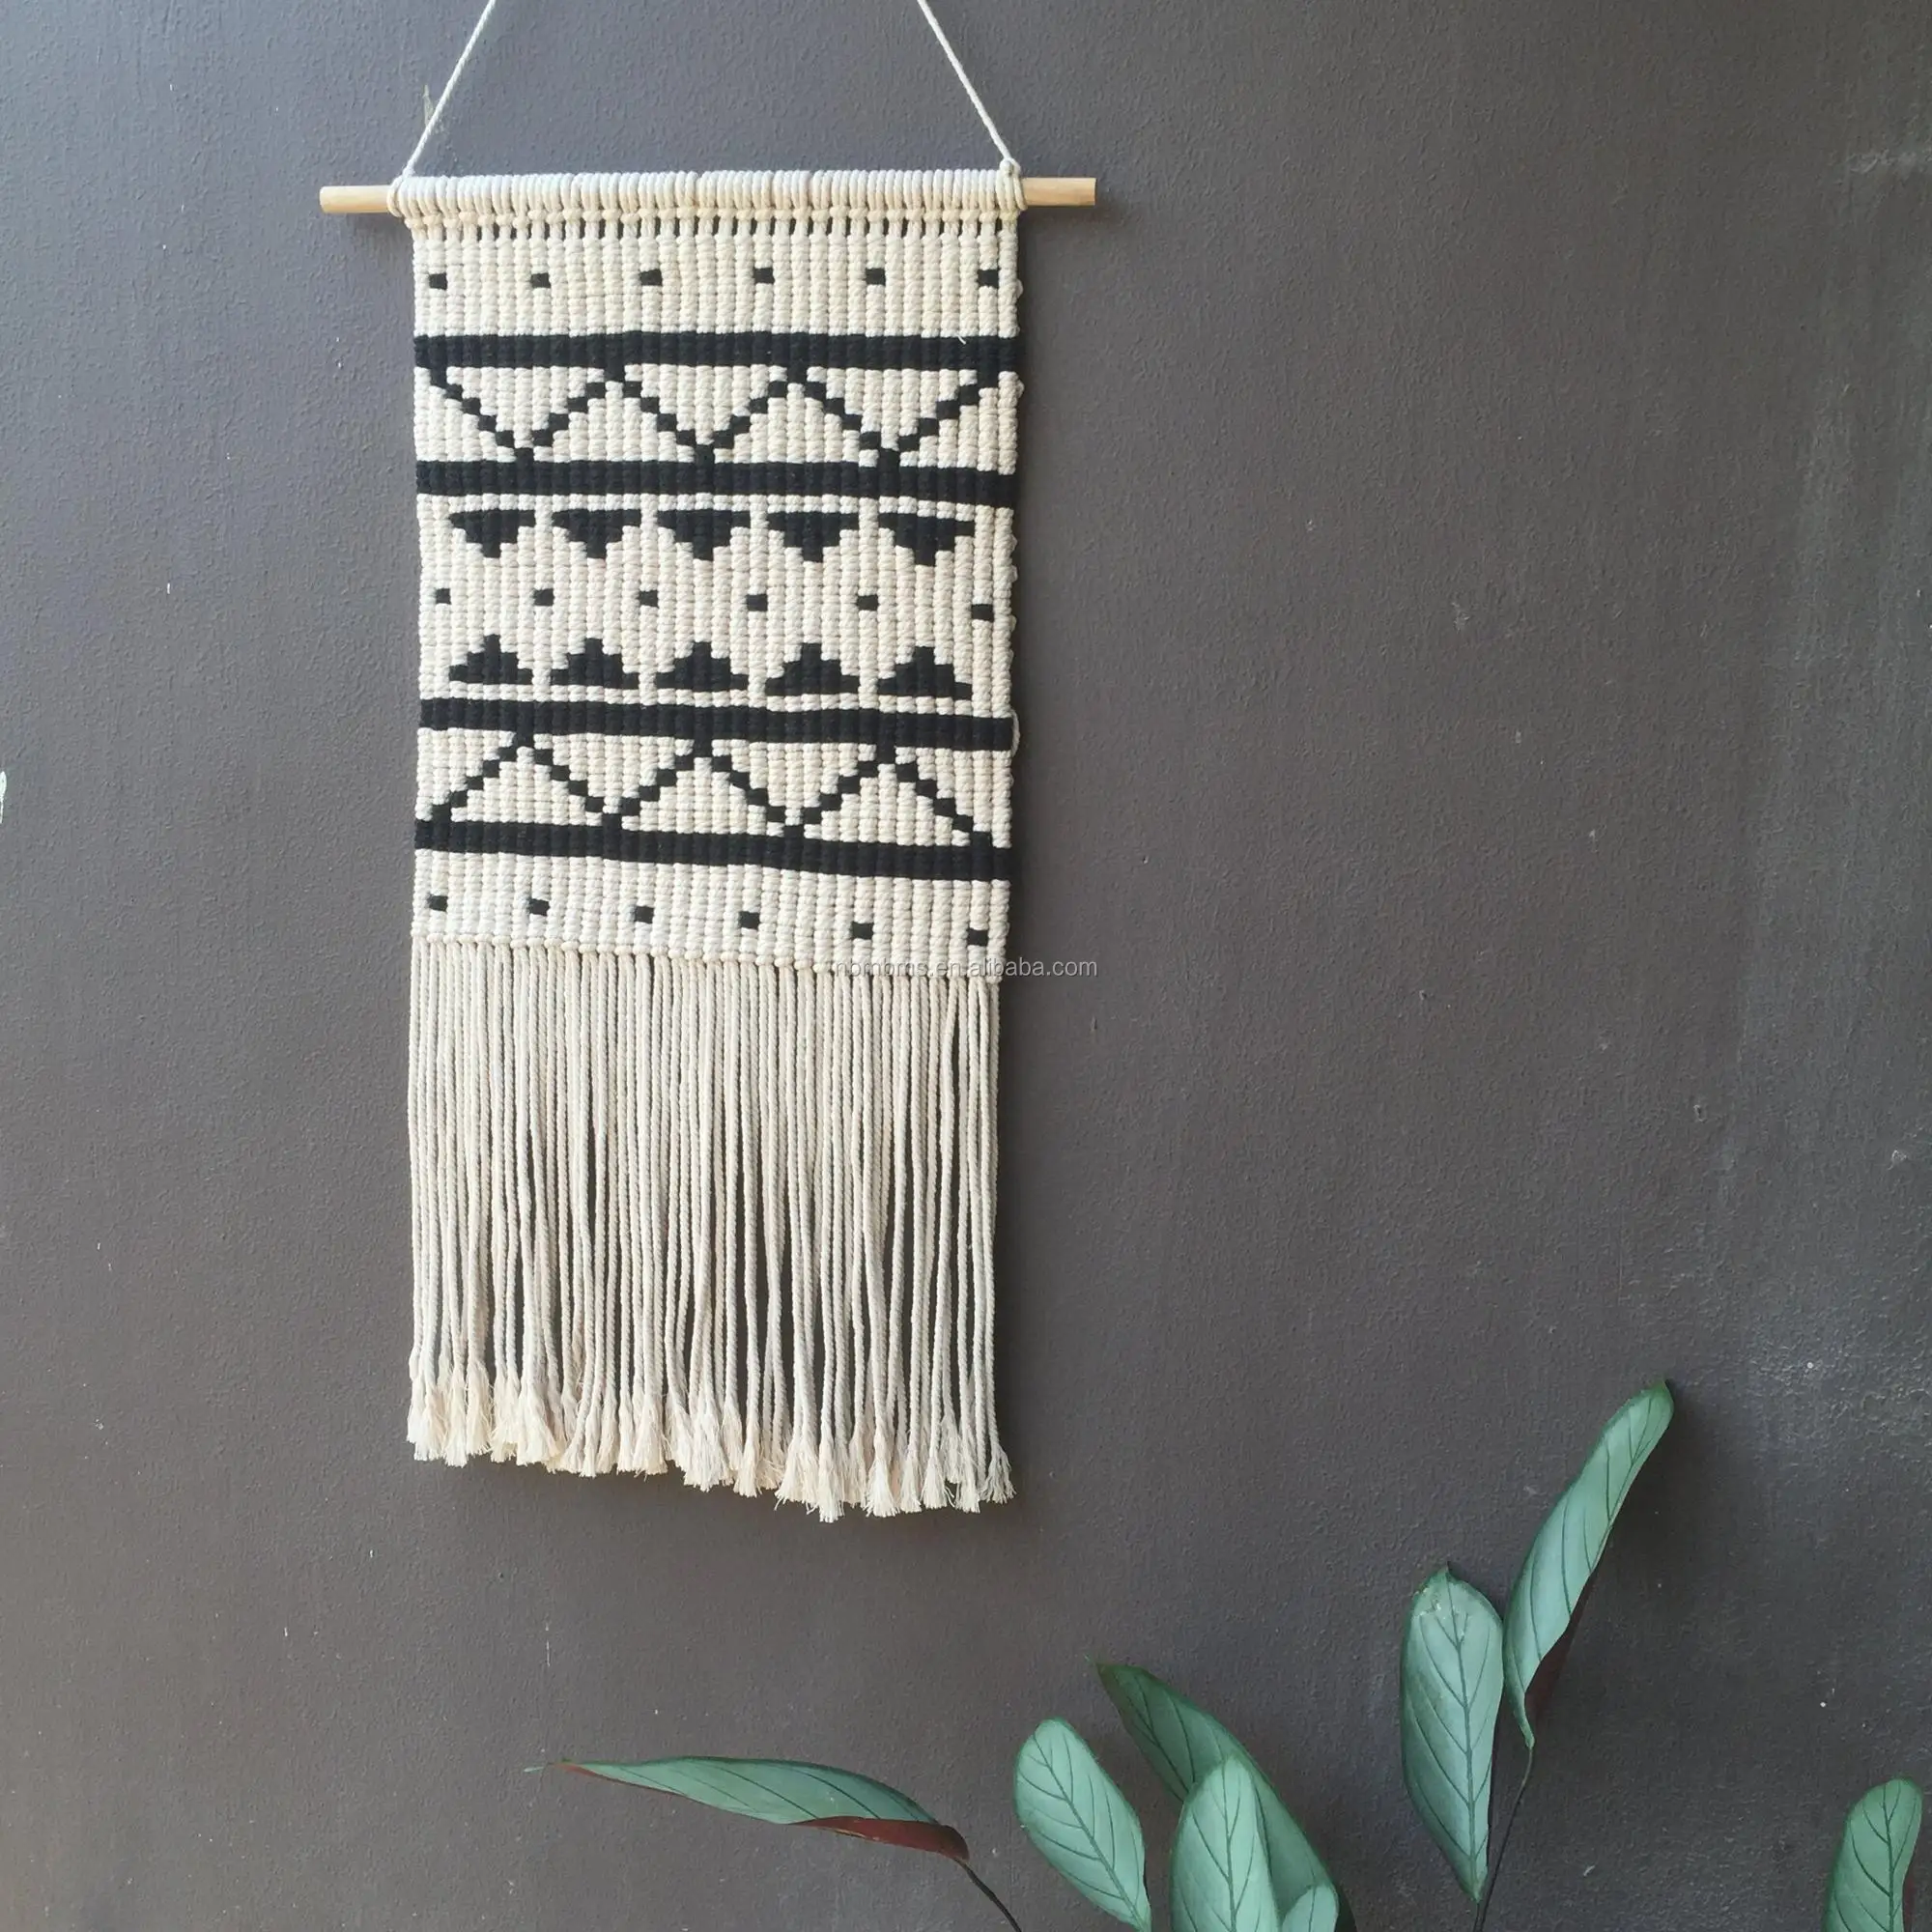 qjmax 简单时尚家居装饰编织挂墙挂毯